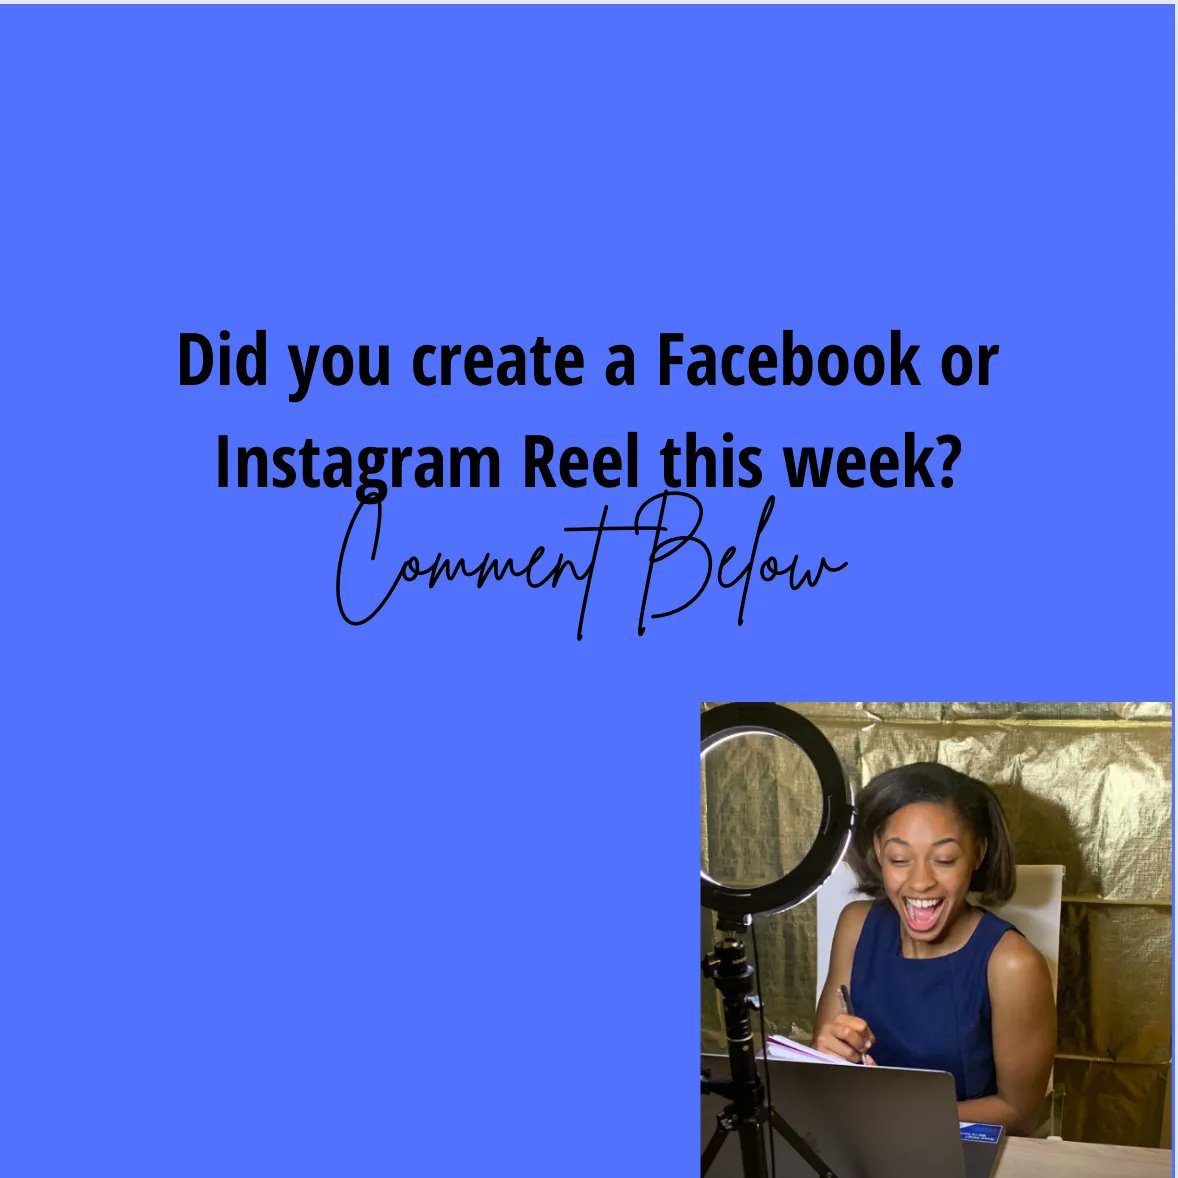 Did you create a Facebook or Instagram reel this week? Let us know!

#reels.
#reelsinstagram.
#reelsvideo.
#reelsindia.
#holareels.
#reelsbrasil.
#reelsteady.
#instagramreels.